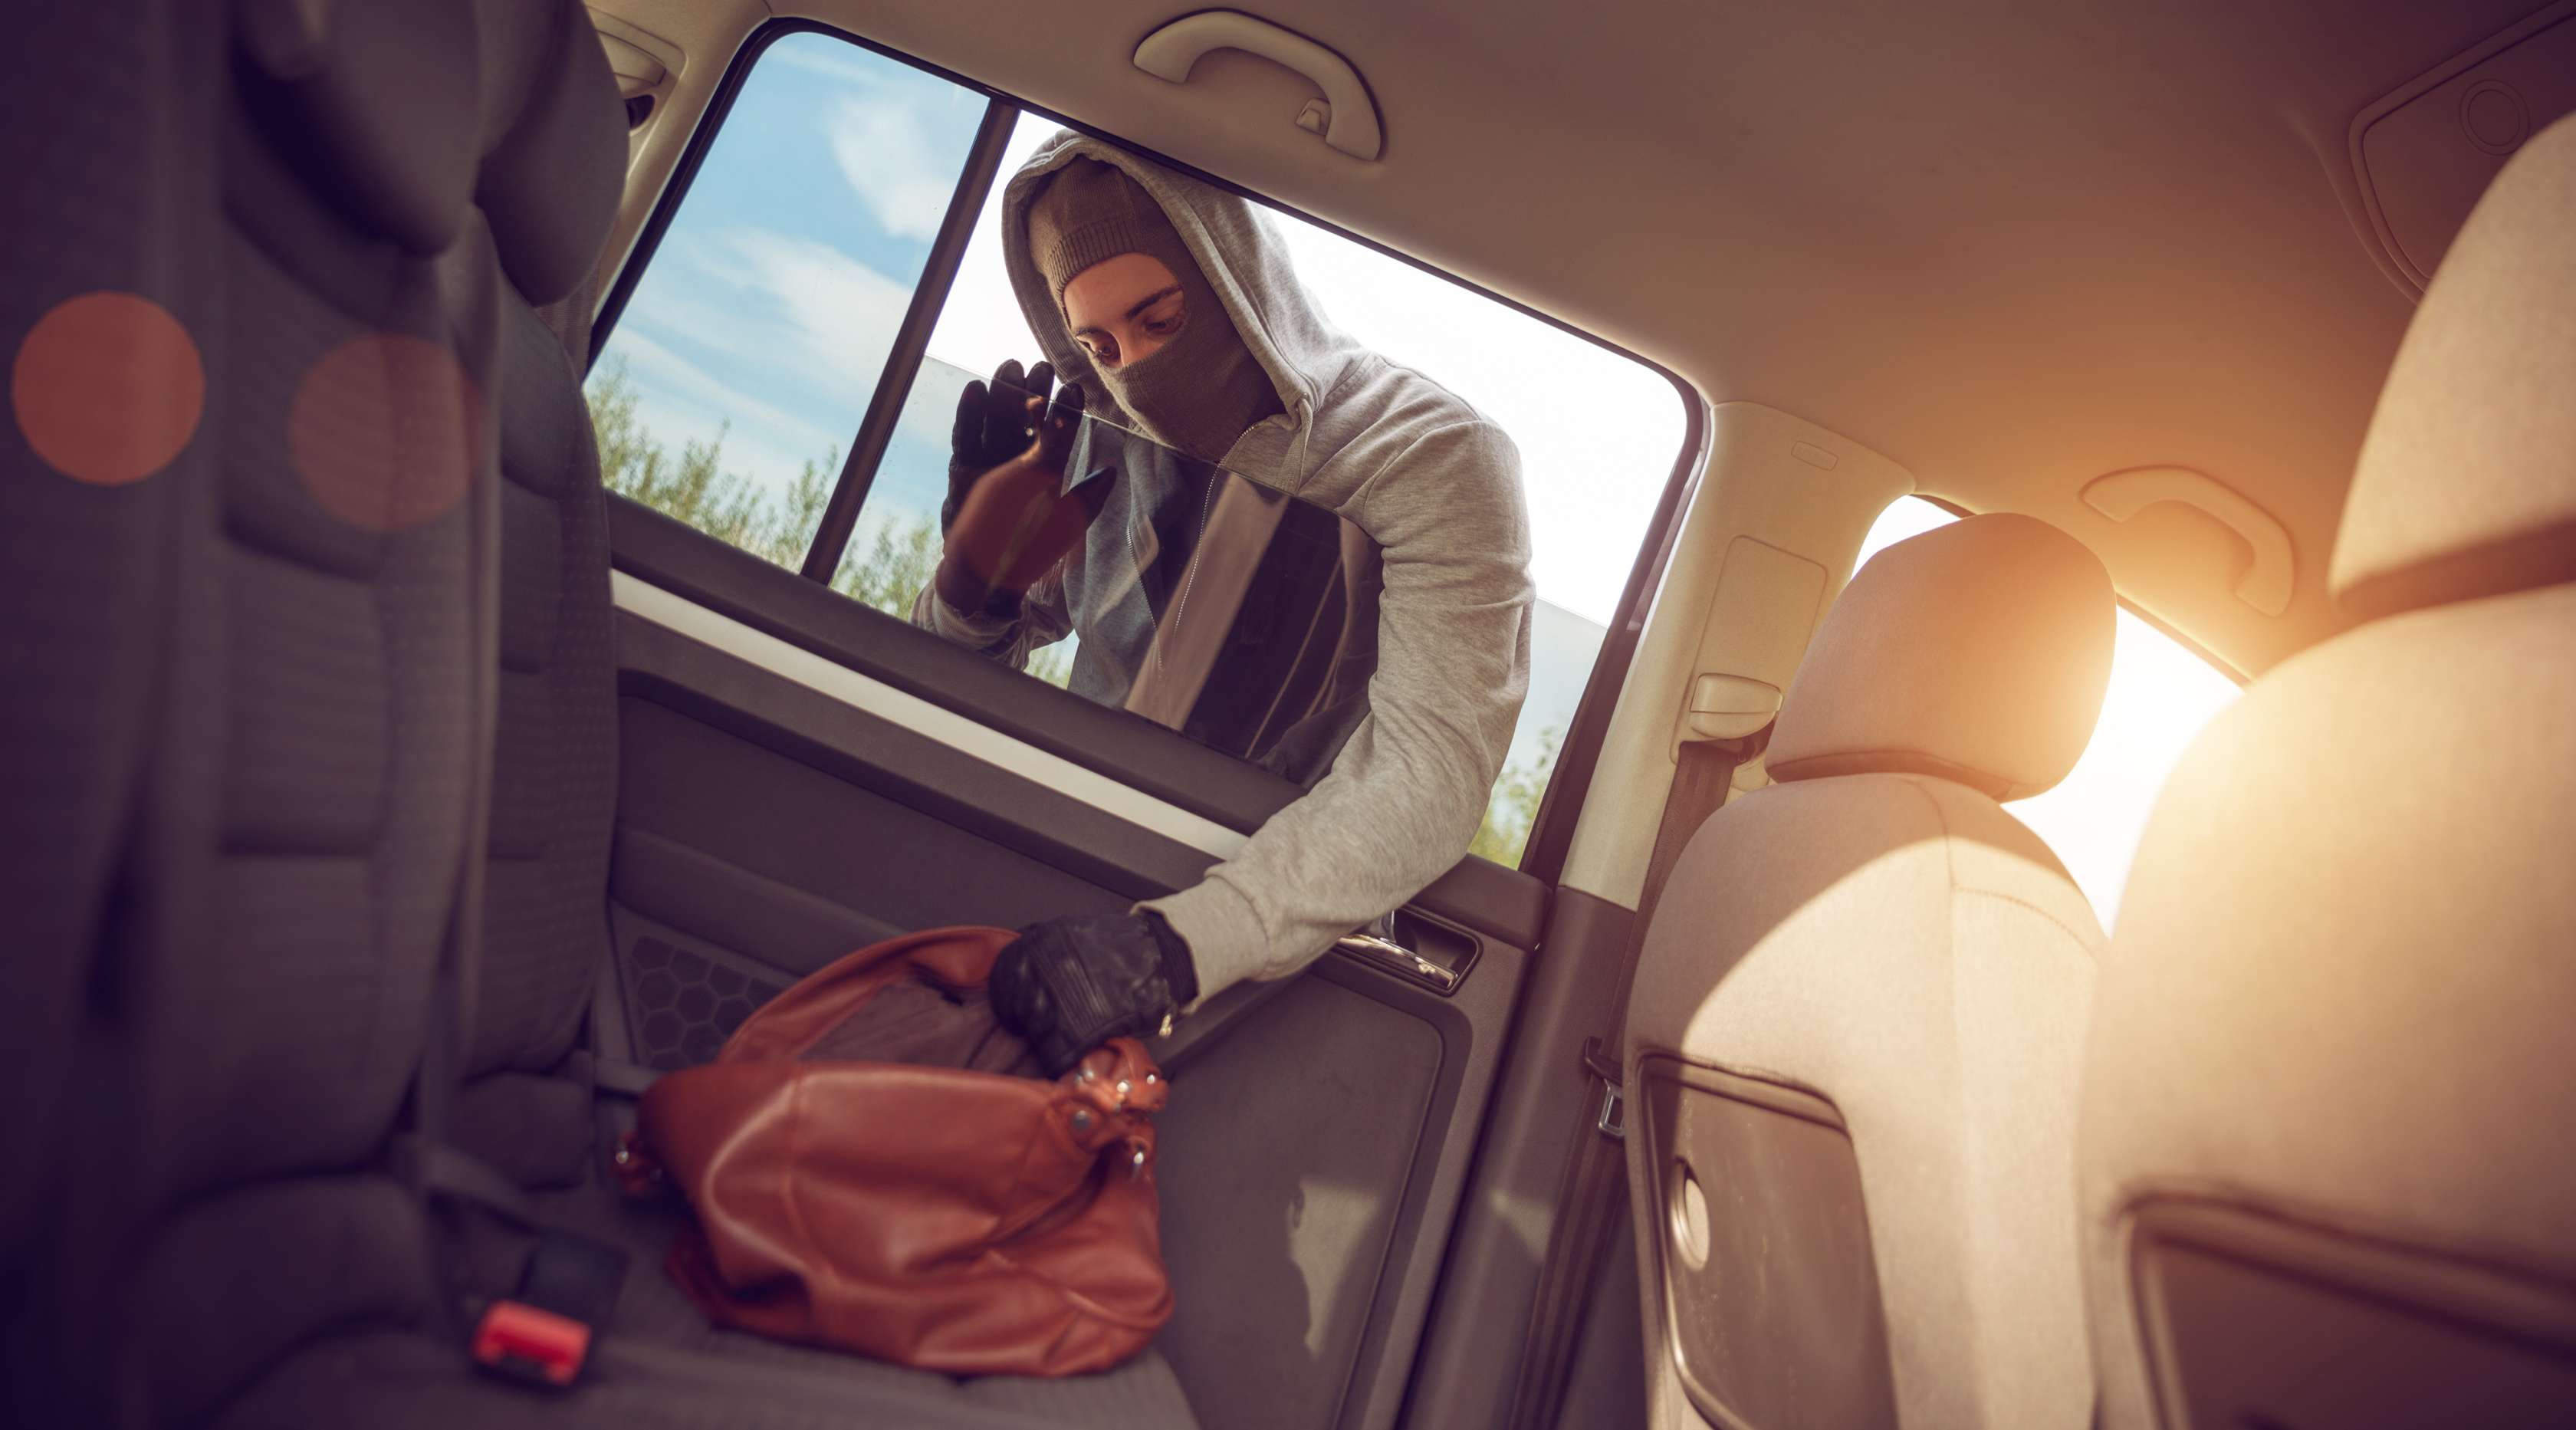 Allianz - Kfz-Versicherung Diebstahl aus Auto: Maskierter Dieb greift durch Seitenfenster eines Pkw eine Handtasche, die auf dem Rücksitz liegt